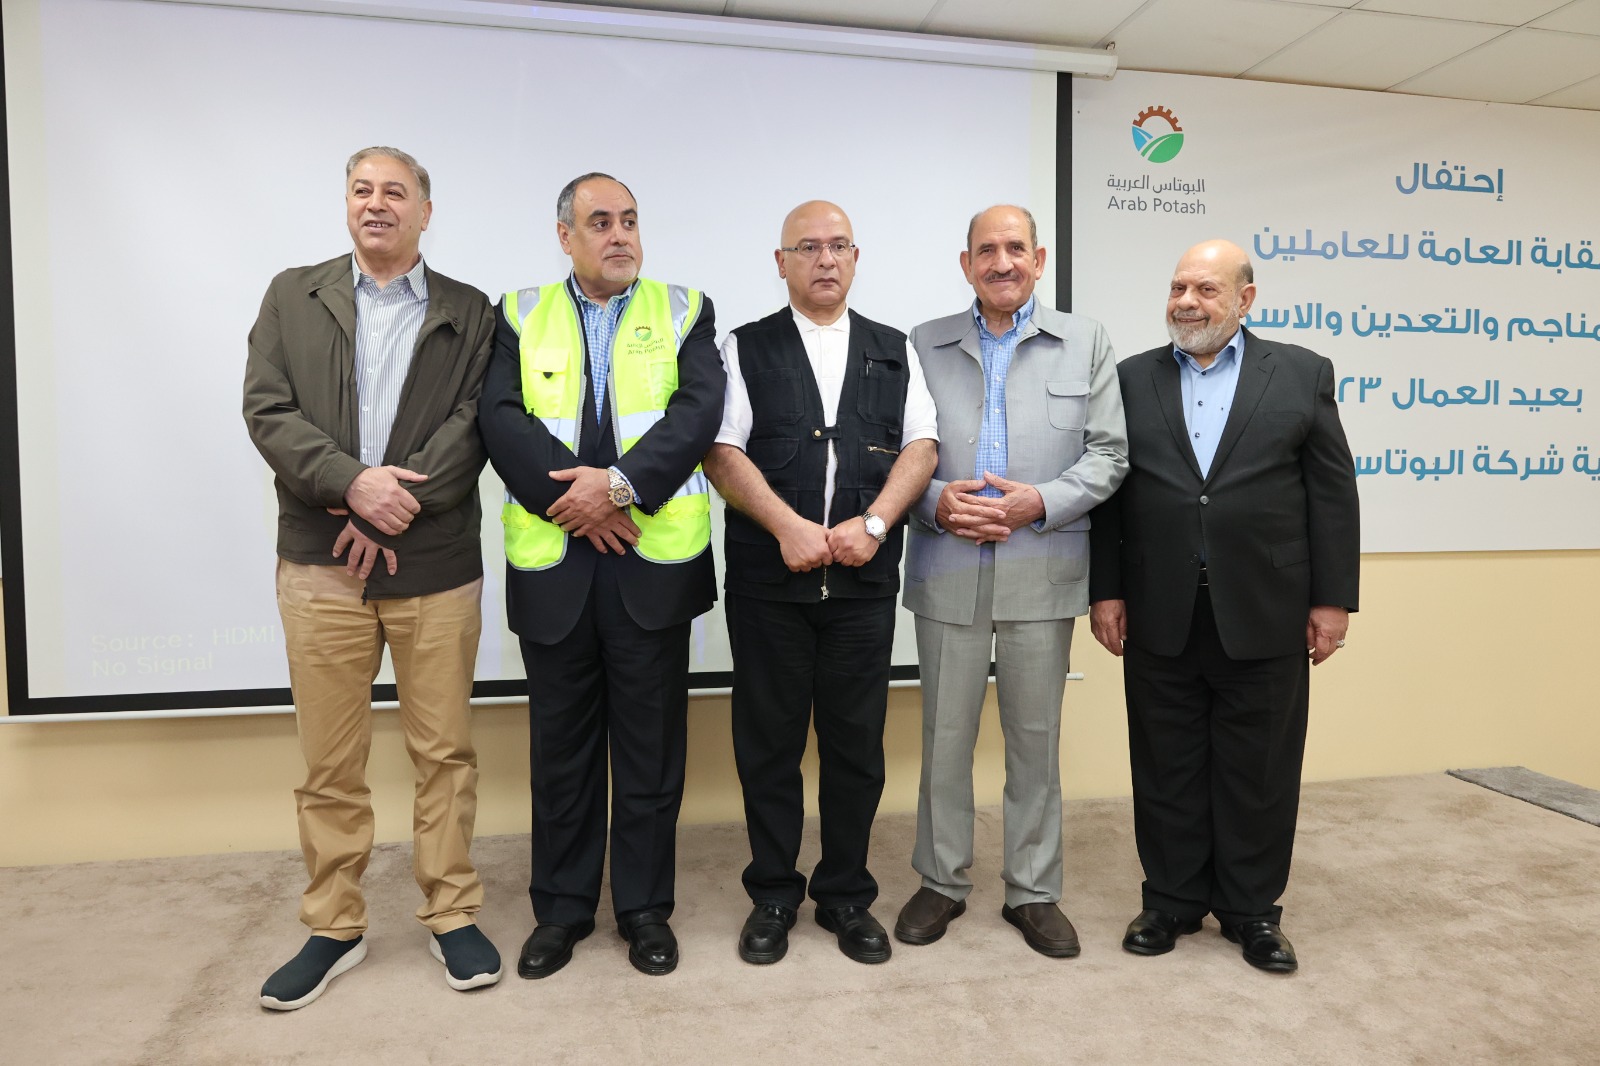 البوتاس العربية  و الفوسفات الأردنية  تحتفيان بعمالهما وتؤكدان على دورهم الرئيسي  في تعزيز حضور ومكانة الشركتين محلياً وعالمياً